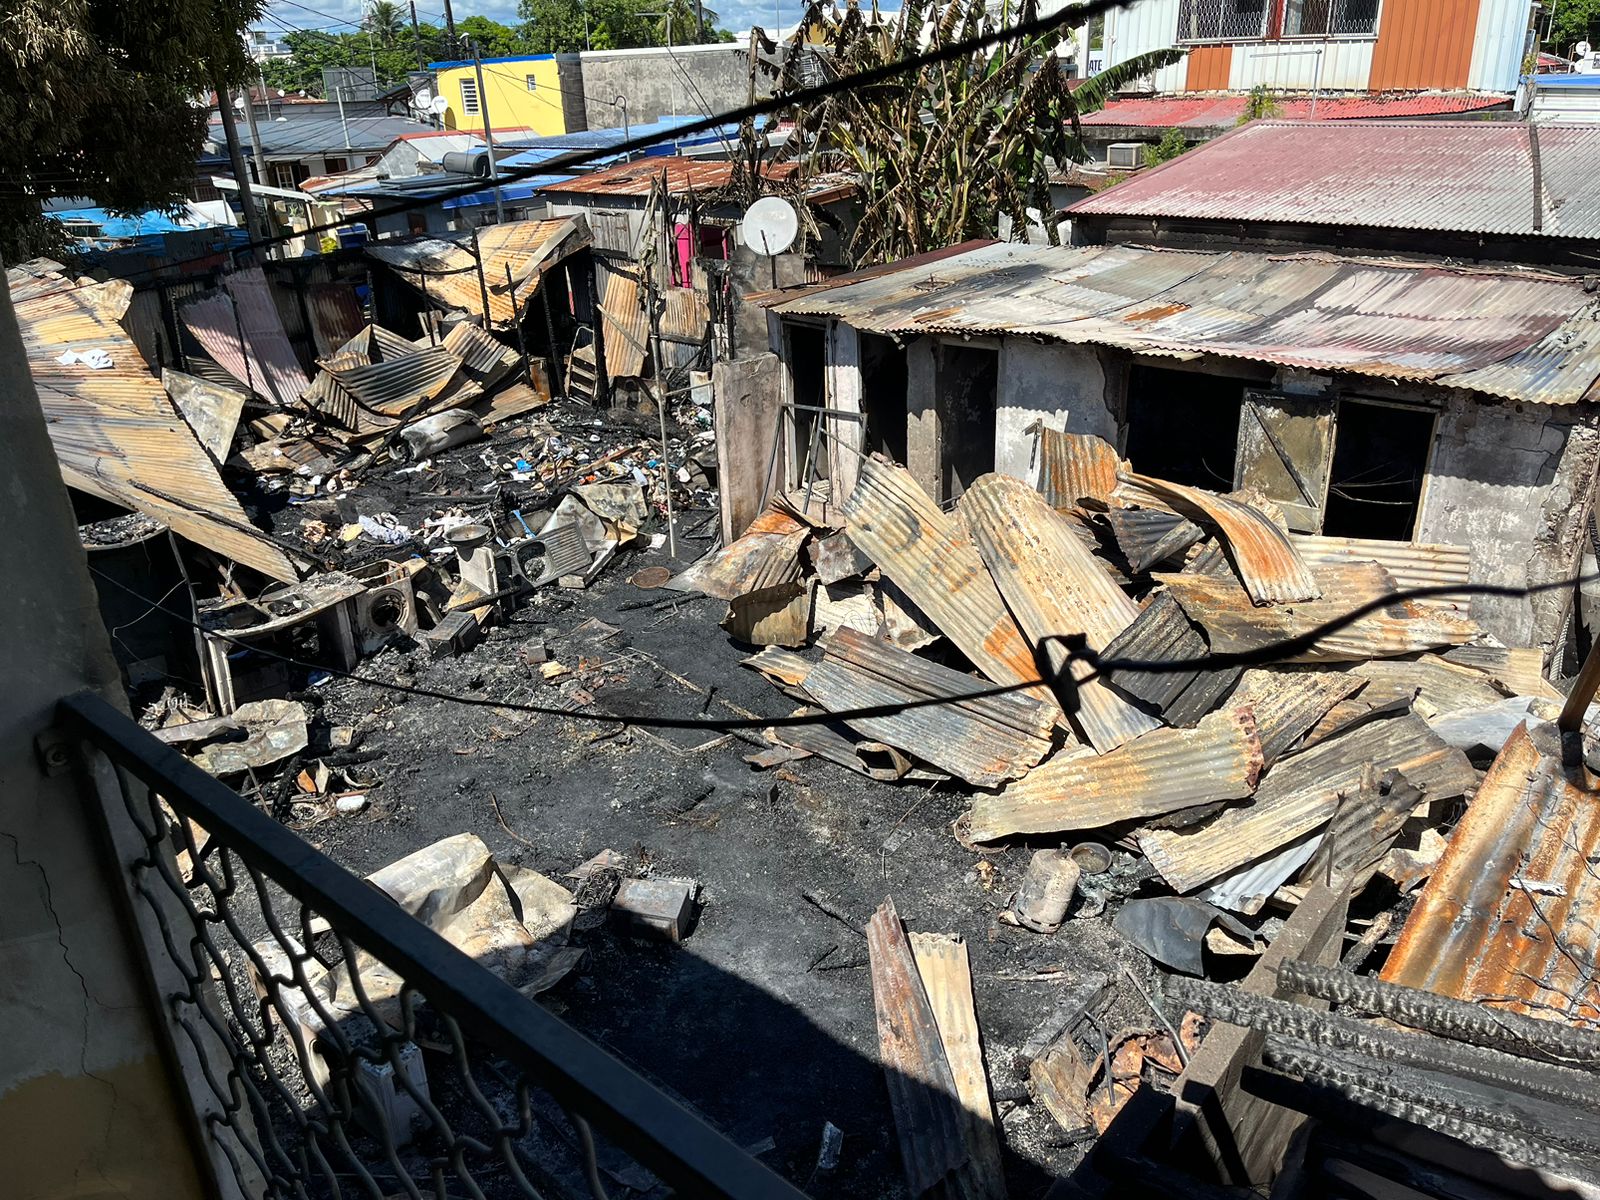     [Témoignage] L’incendie à la cour Monbruno aux Abymes fait 14 sinistrés

